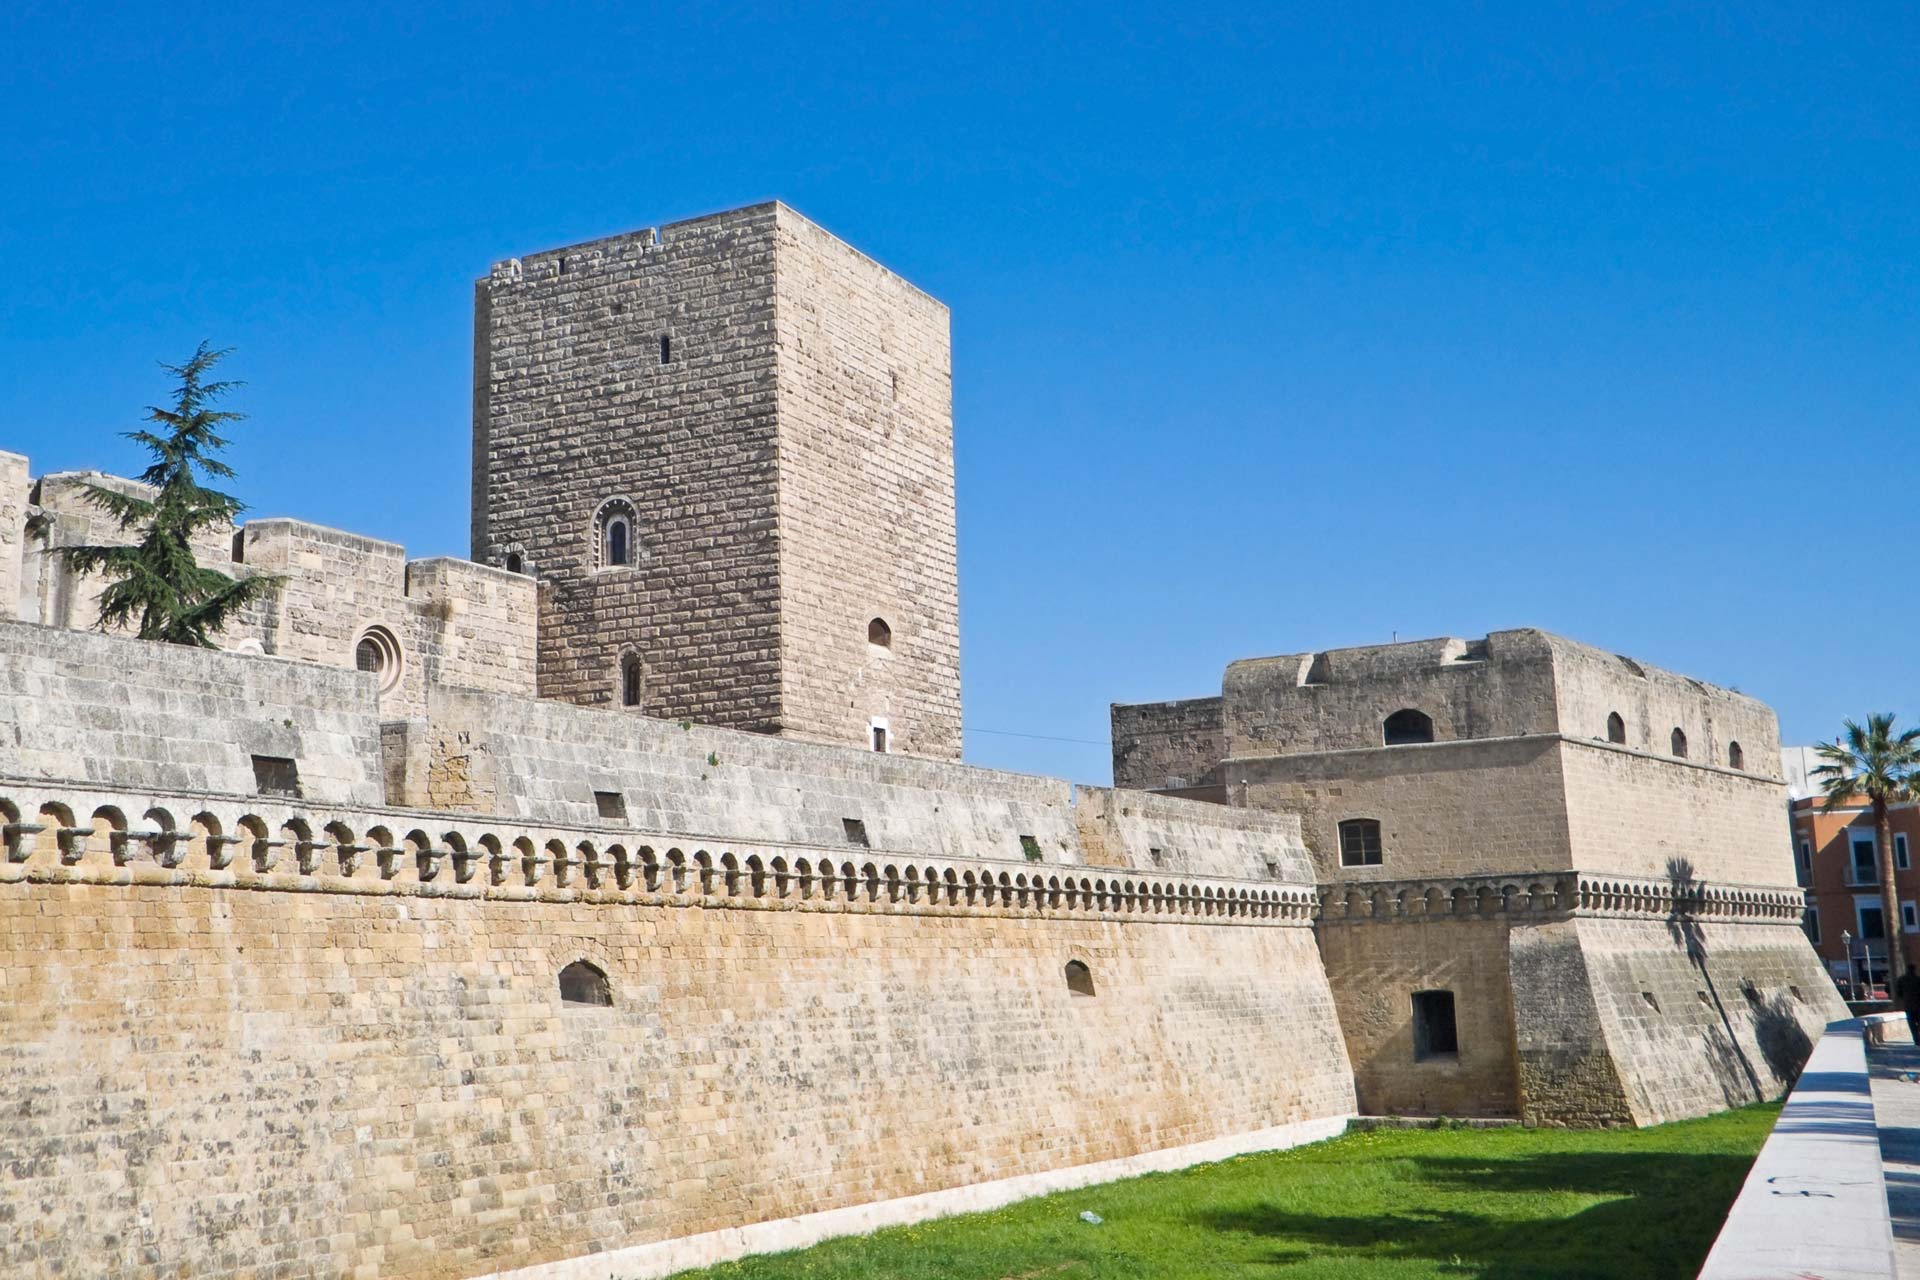 Bari, caos al castello Svevo, calca e nervi tesi all’ingresso, visitatori vogliono entrare gratis, direttrice chiede intervento carabinieri